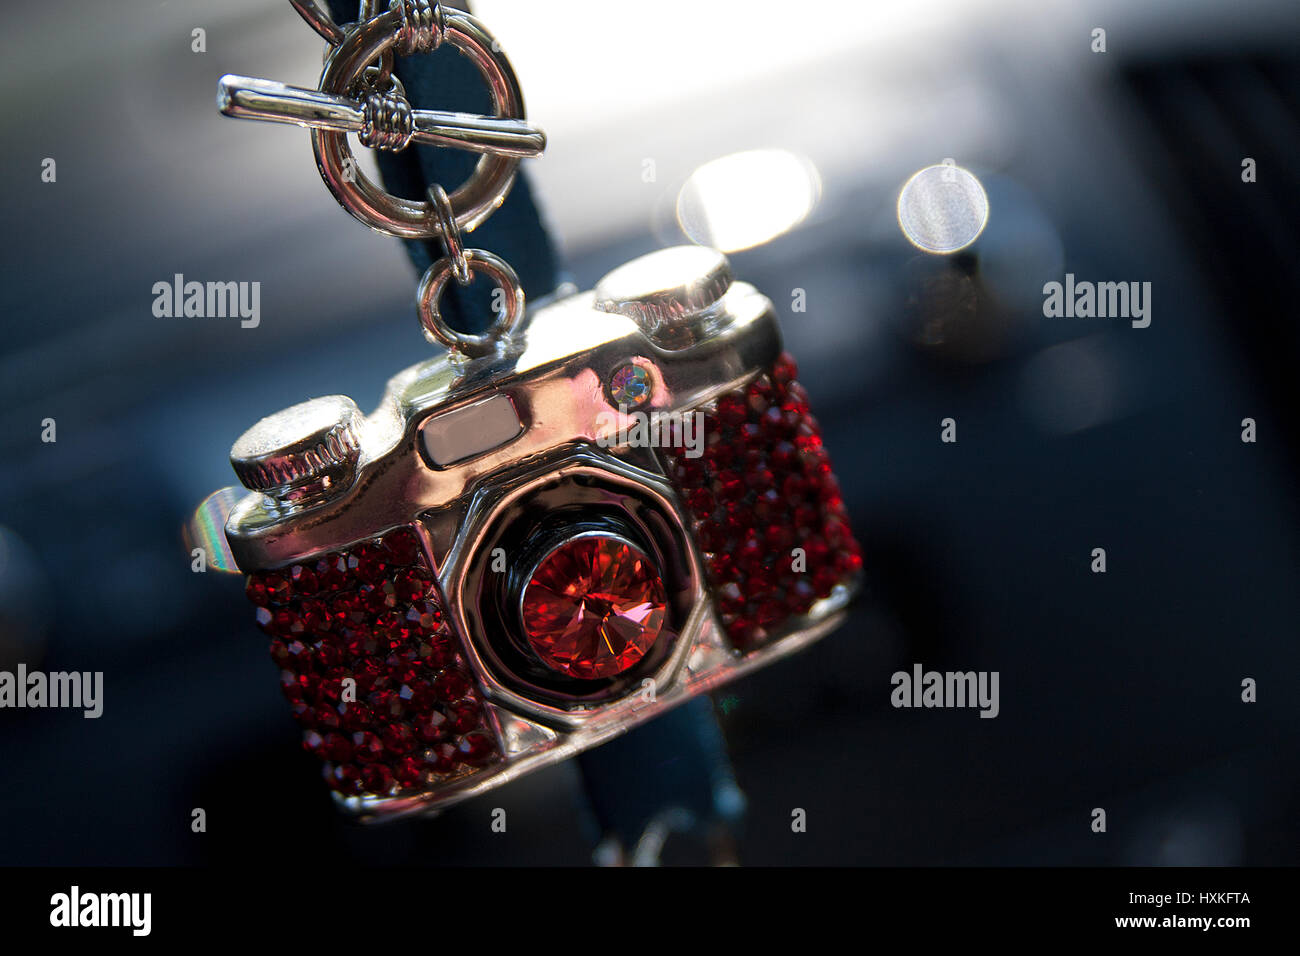 Mini telecamera immagini e fotografie stock ad alta risoluzione - Alamy